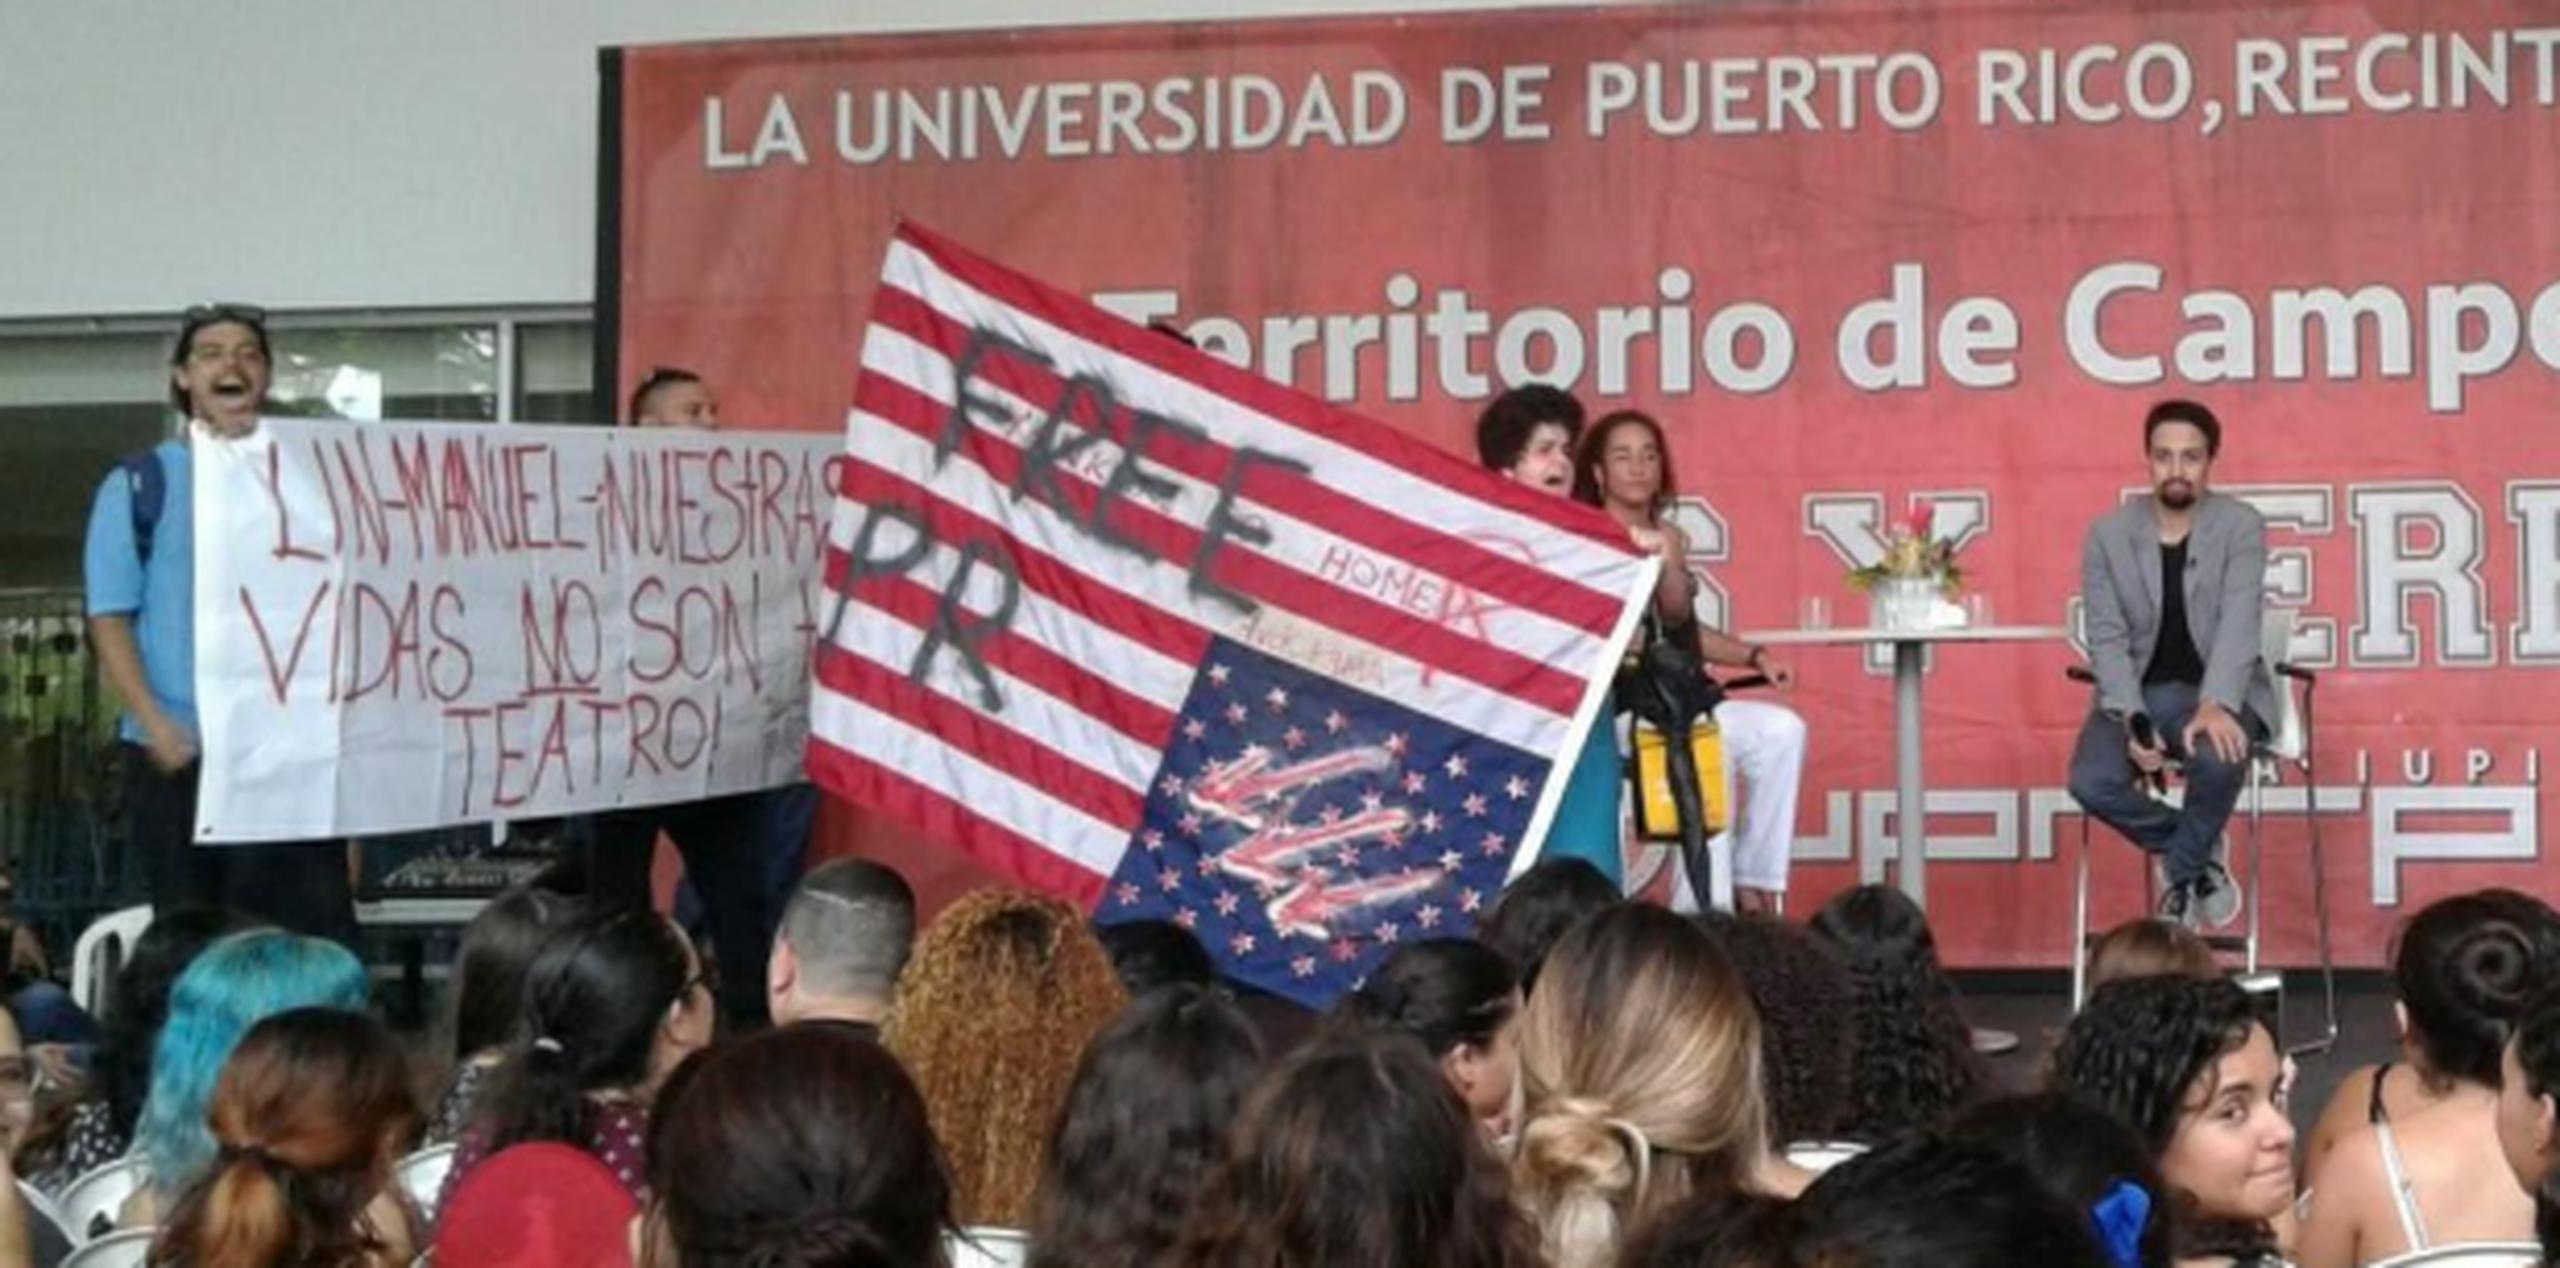 Lin-Manuel Miranda estaba en la tarima cuando los manifestantes subieron a la misma con pancartas. (Facebook / Centro de Comunicación Estudiantil)